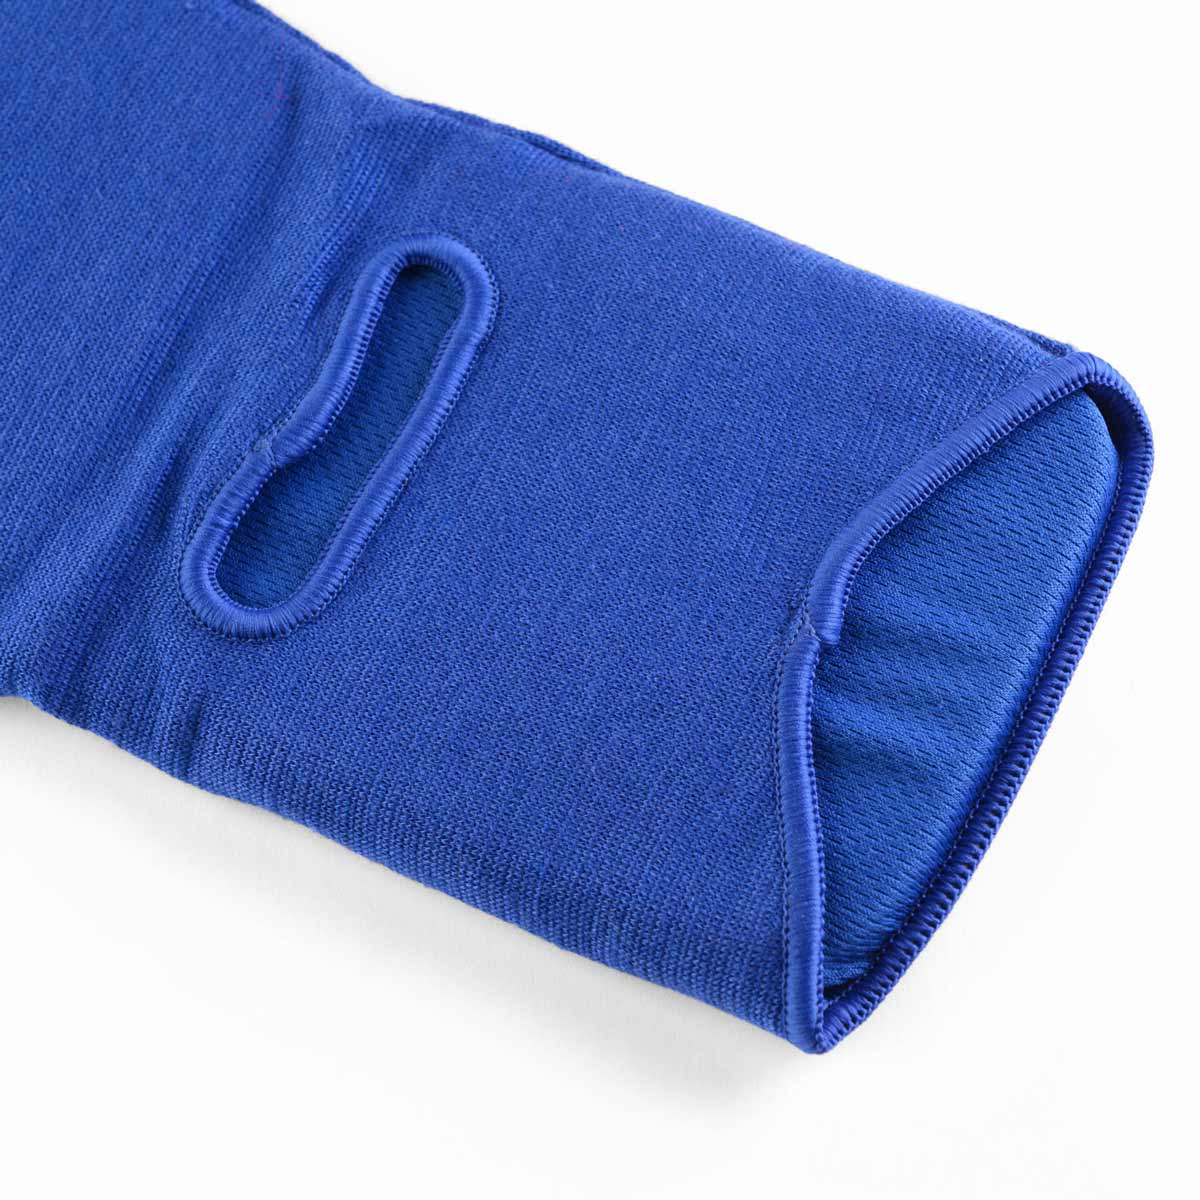 Die Innenseite der Phantom Impact MMA Schienbeinschoner in Blau ist mit angenehmen Mesh Material ausgestattet welches Luftdurchlässig ist und somit super angenehm im Kampfsporttraining zu tragen.